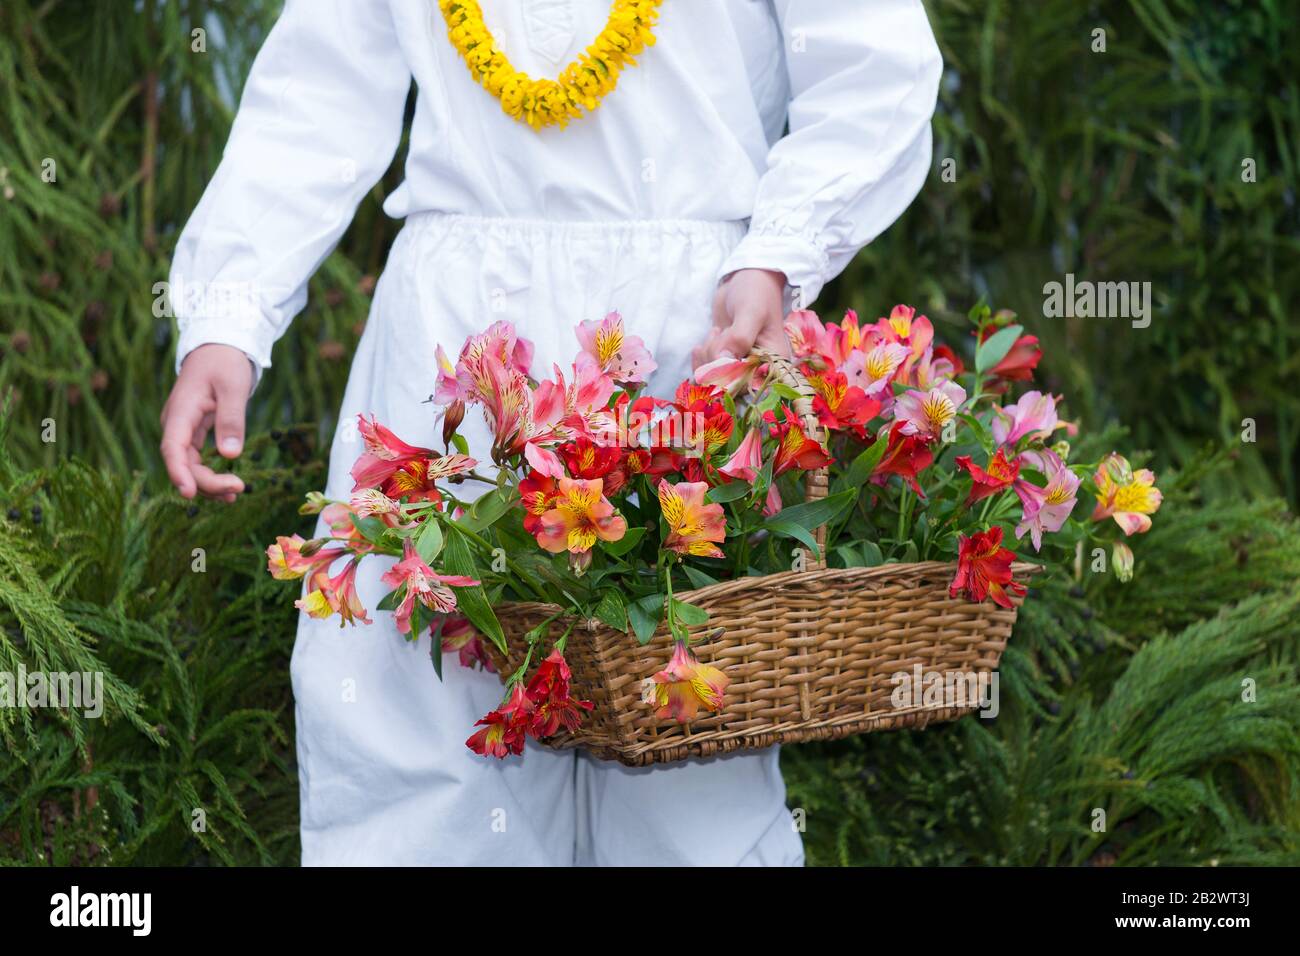 Giovane teen maschio indossando il vestito tradizionale del folclore dell'isola di Madeira che tiene un cesto di fiori al 'Festival dei fiori di madira' nell'isola di Madeira, in Portogallo Foto Stock